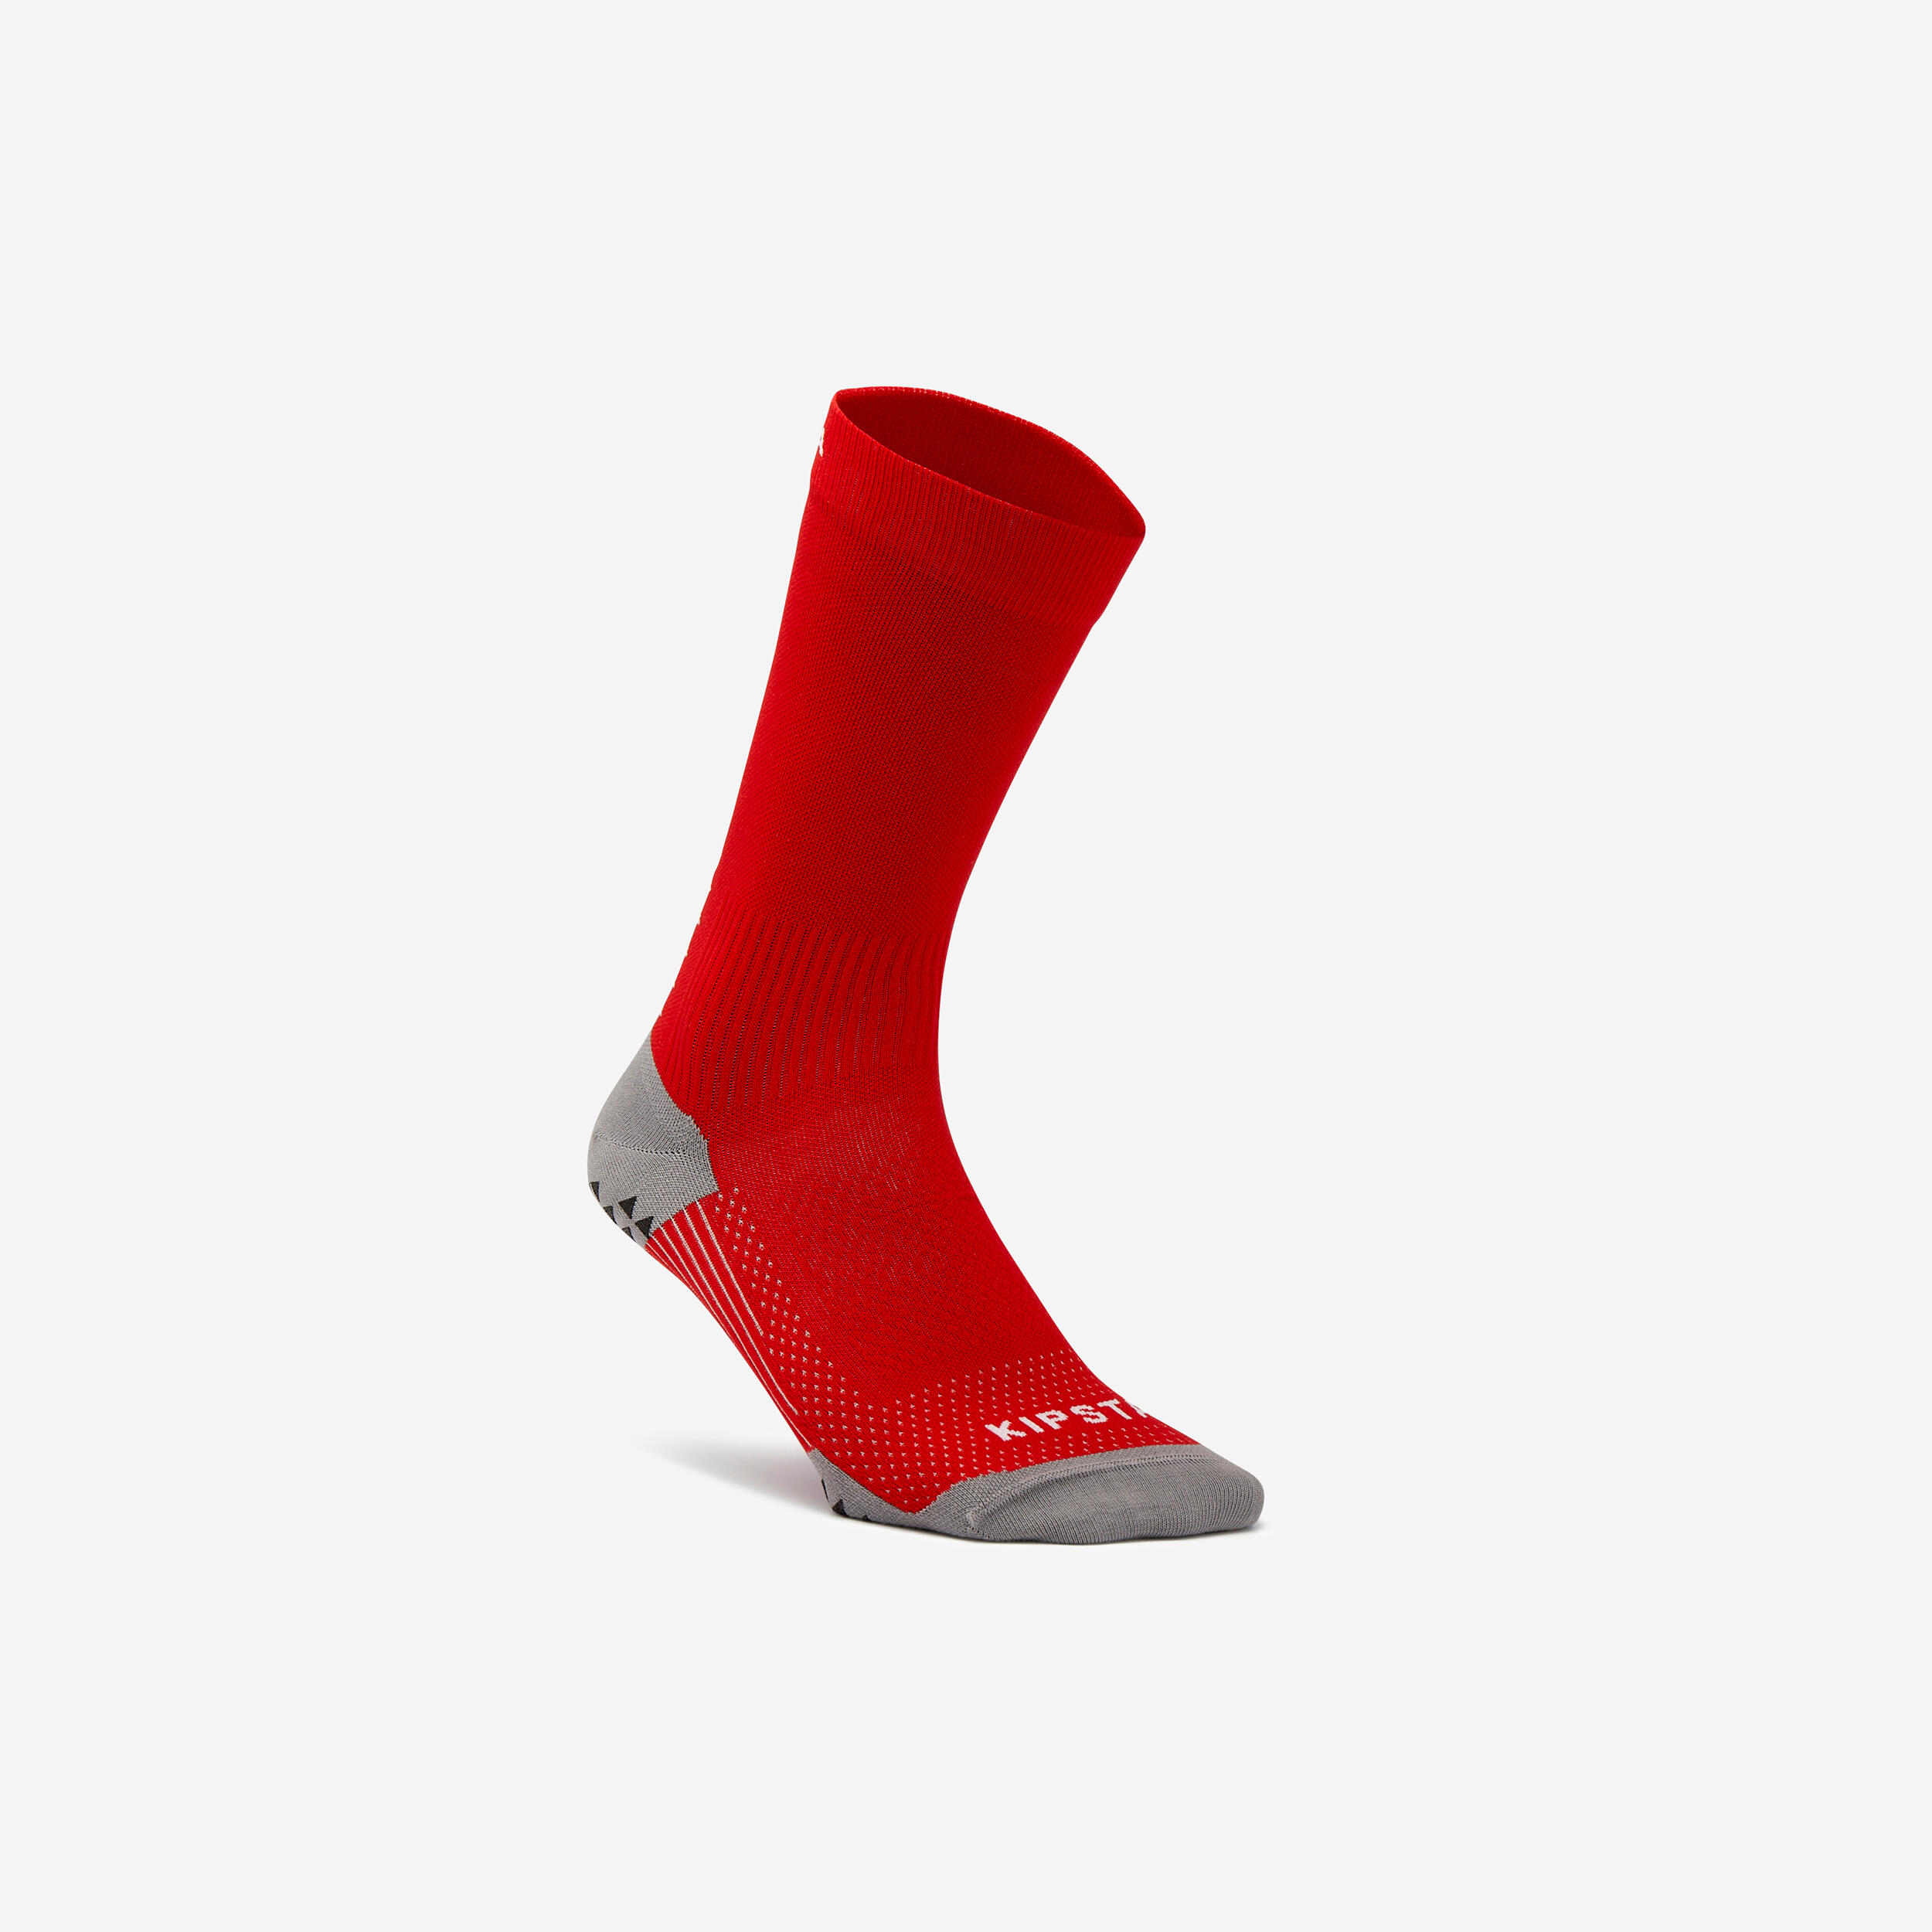 Tape Design Grip Socks - Suitable For Football, Basketball, Netball, Tennis